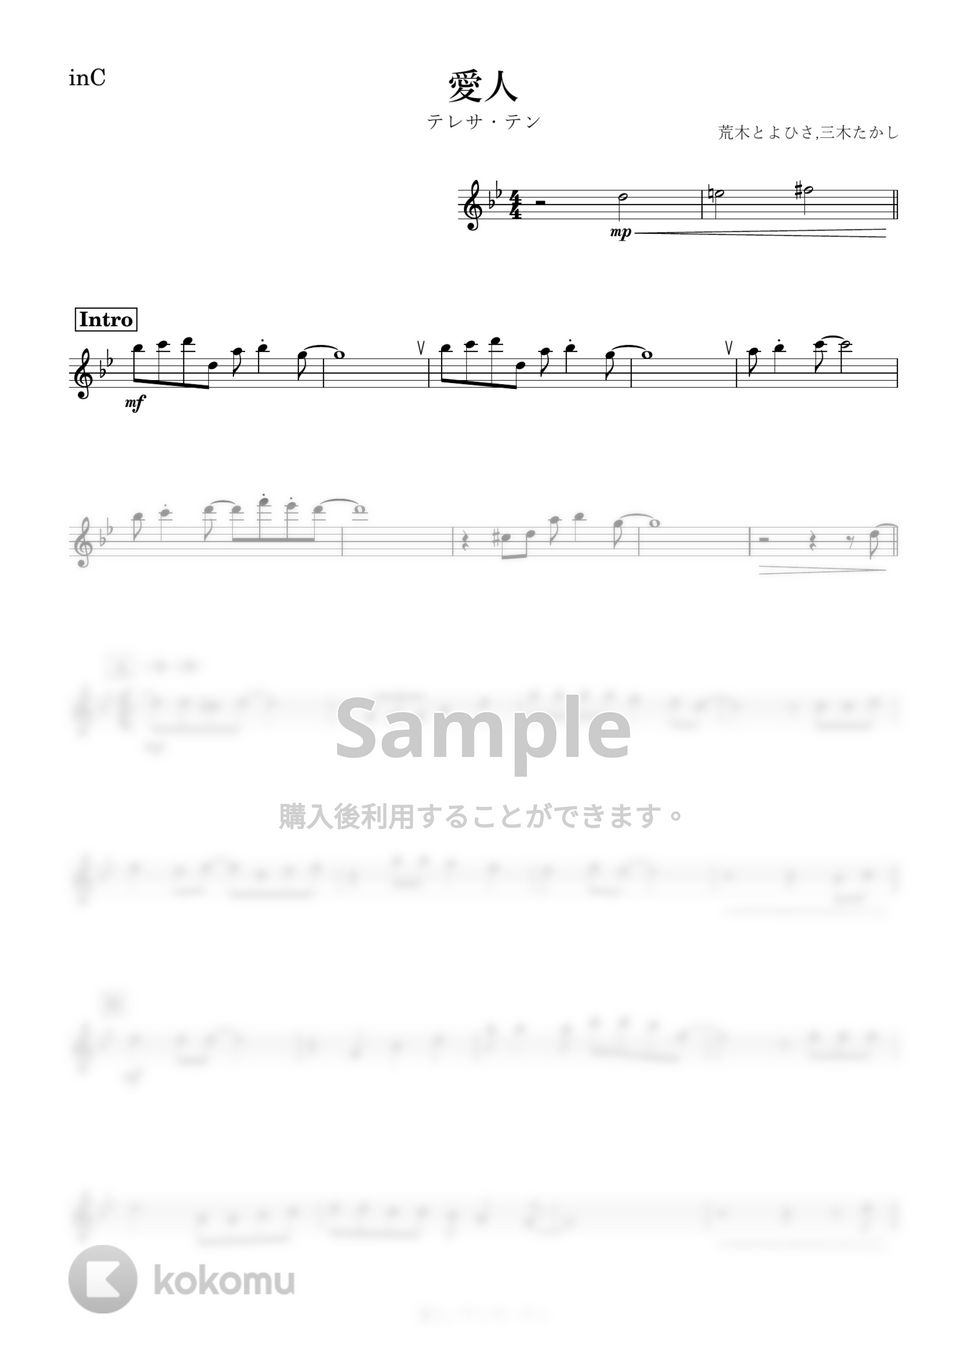 テレサ・テン - 愛人 (C) by kanamusic